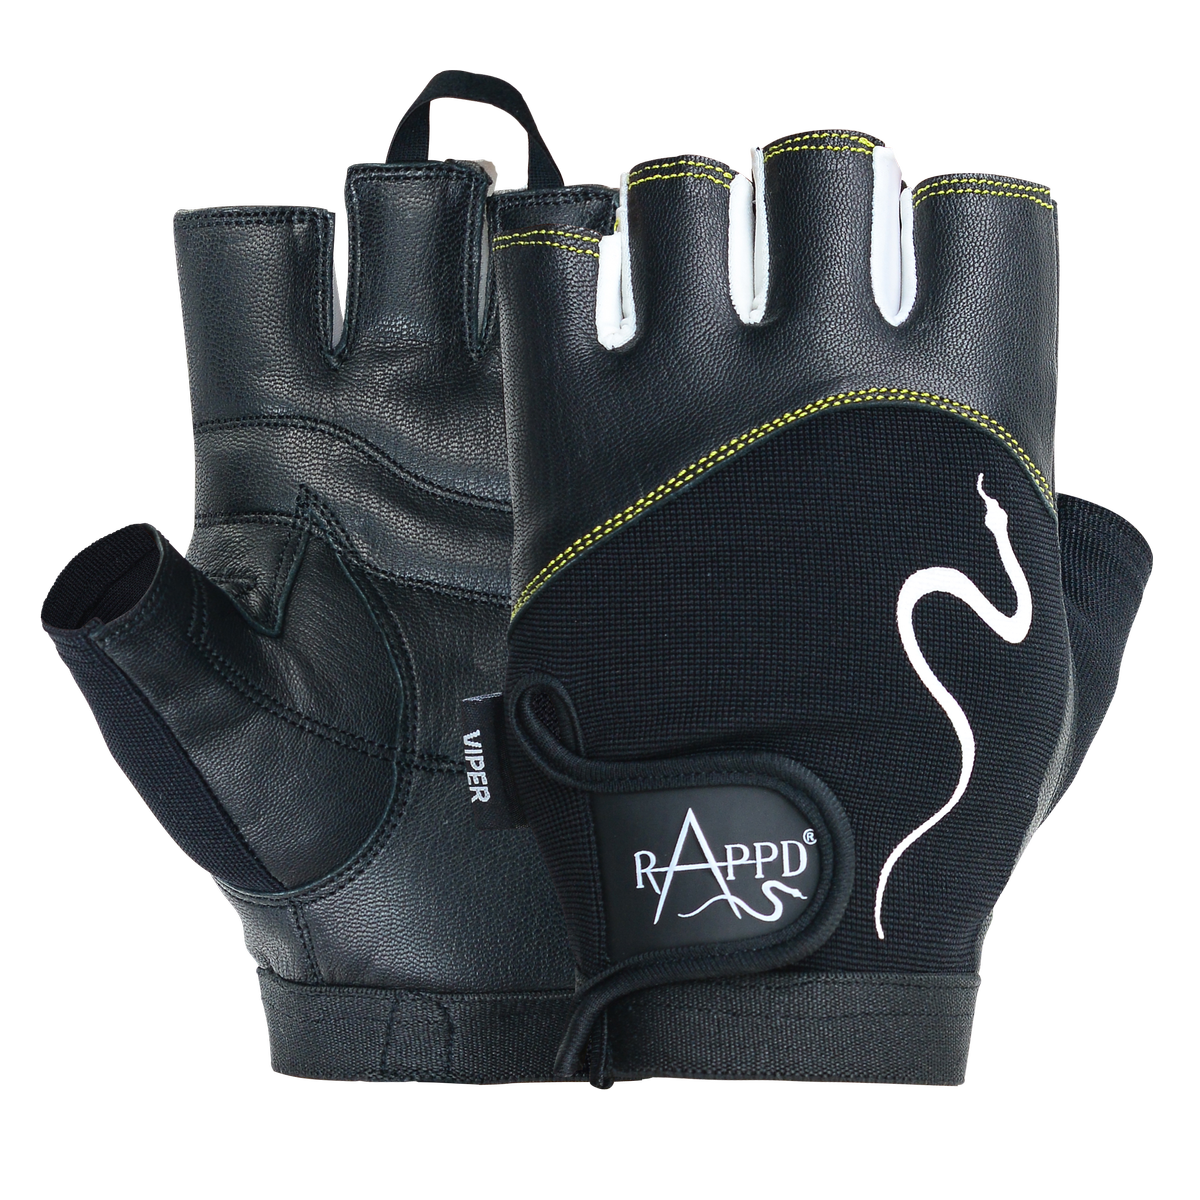 Rappd Viper Gloves